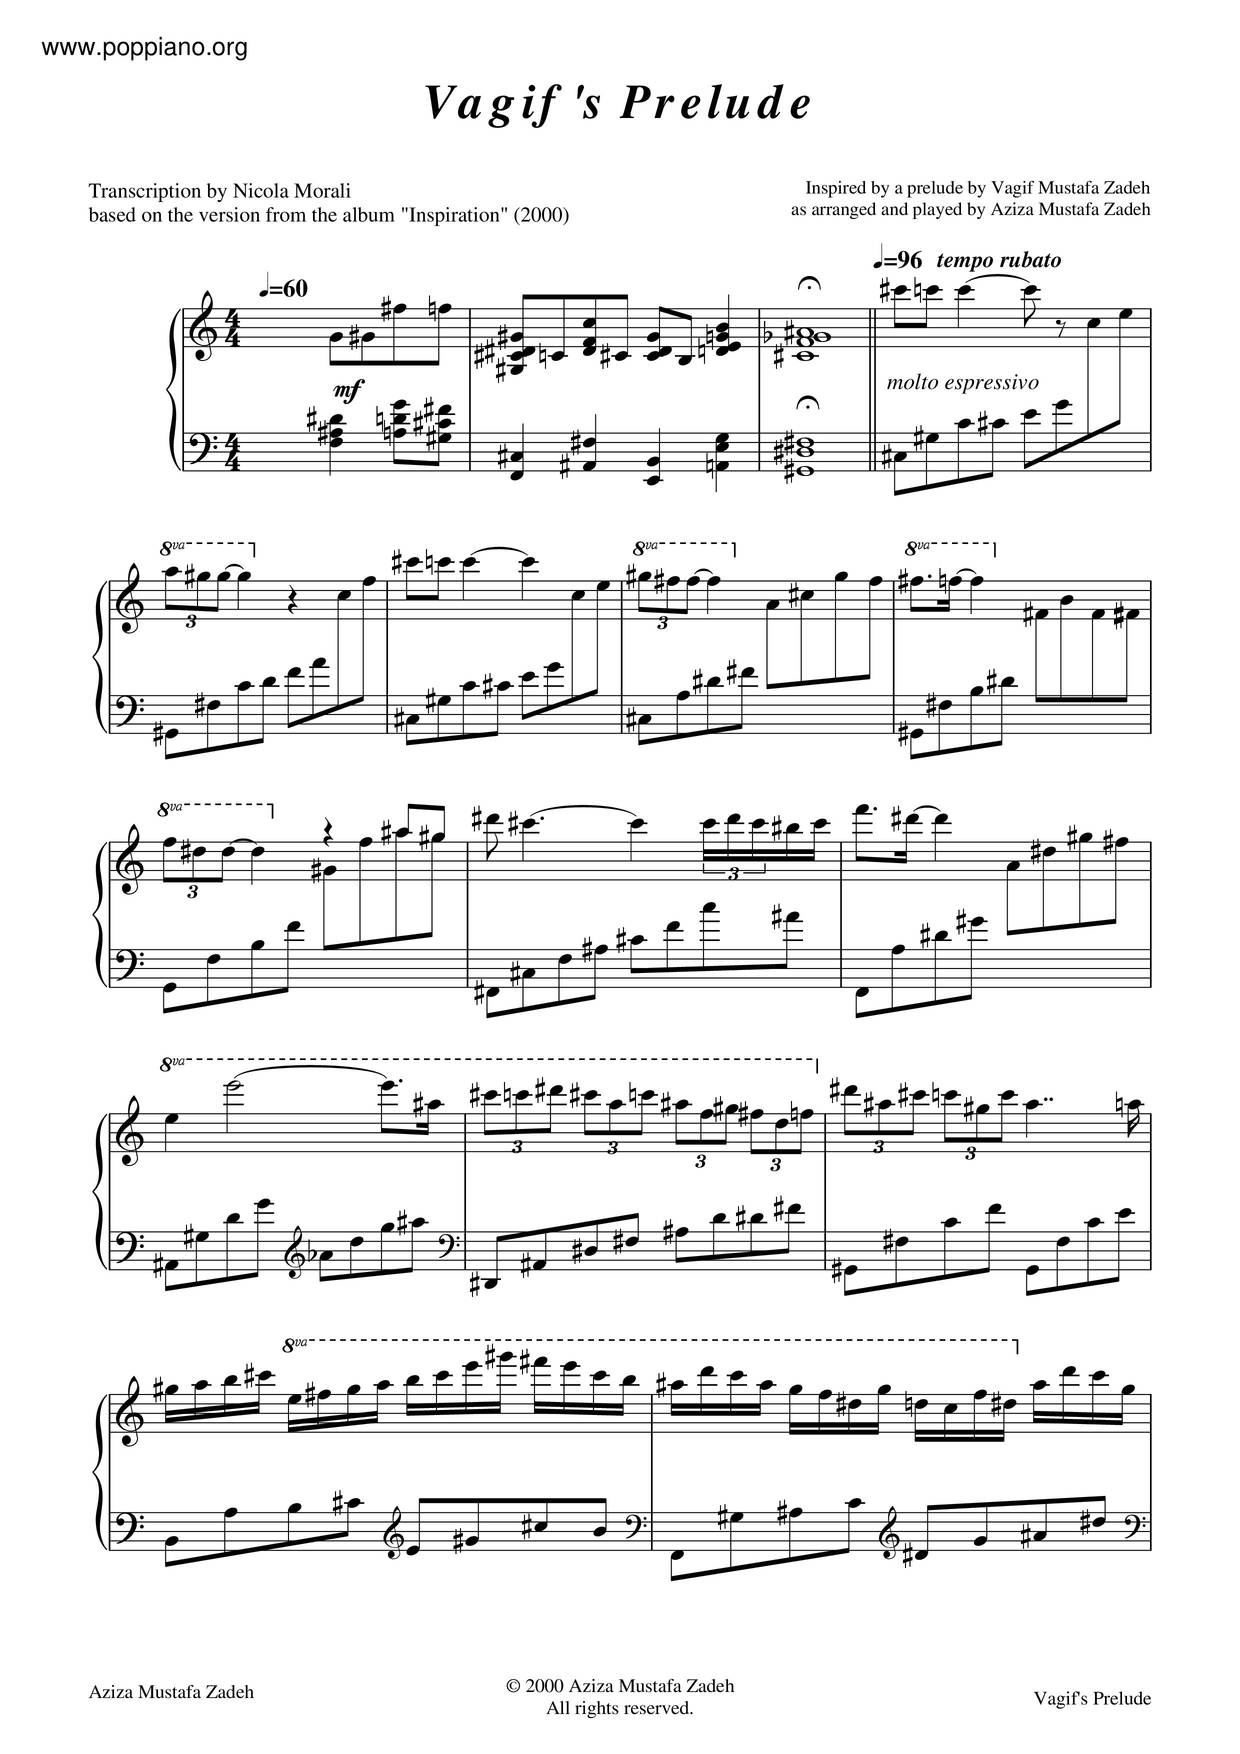 Vagif's Preludeピアノ譜